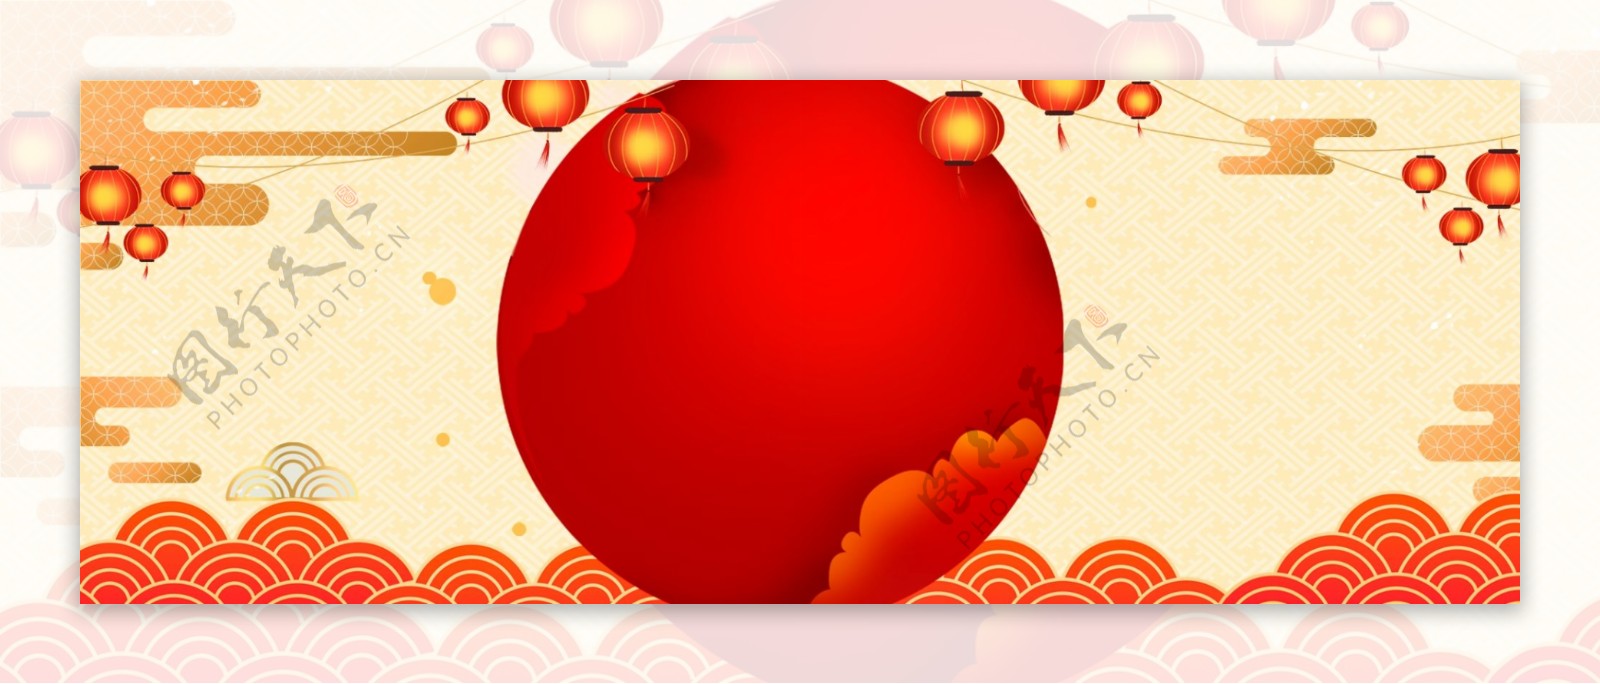 新春年货节中国风海报背景